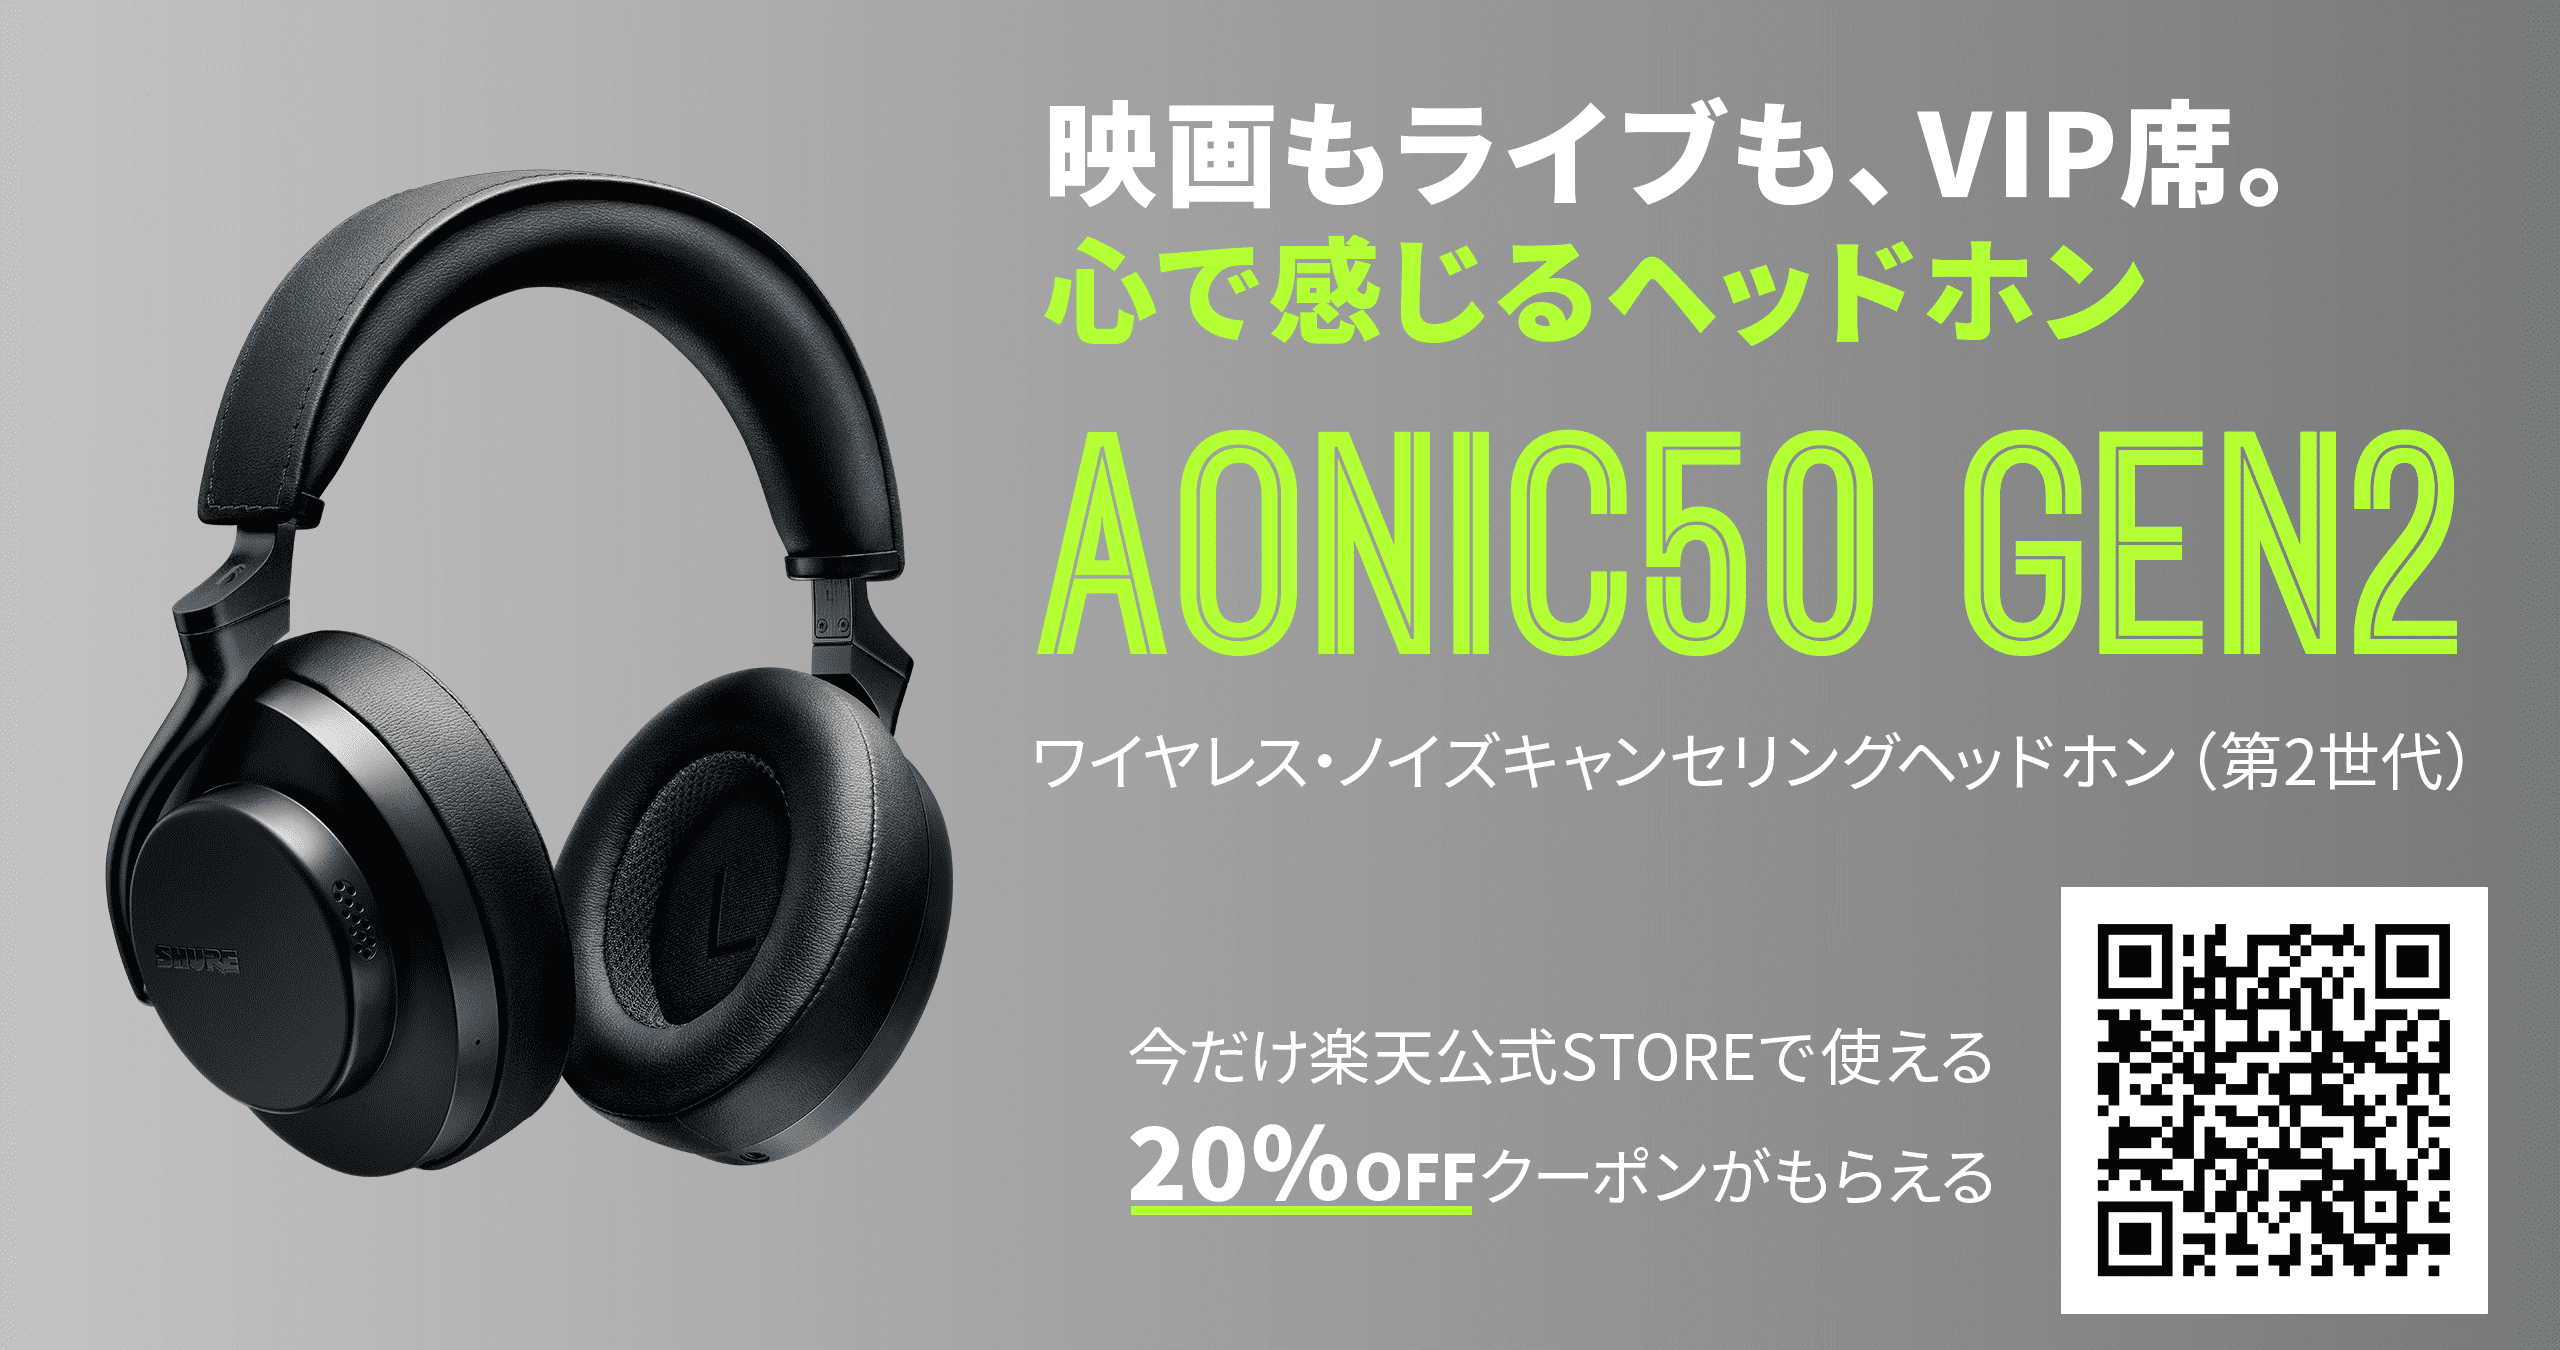 AONIC50 GEN2 ワイヤレス・ノイズキャンセリングヘッドホン(第2世代